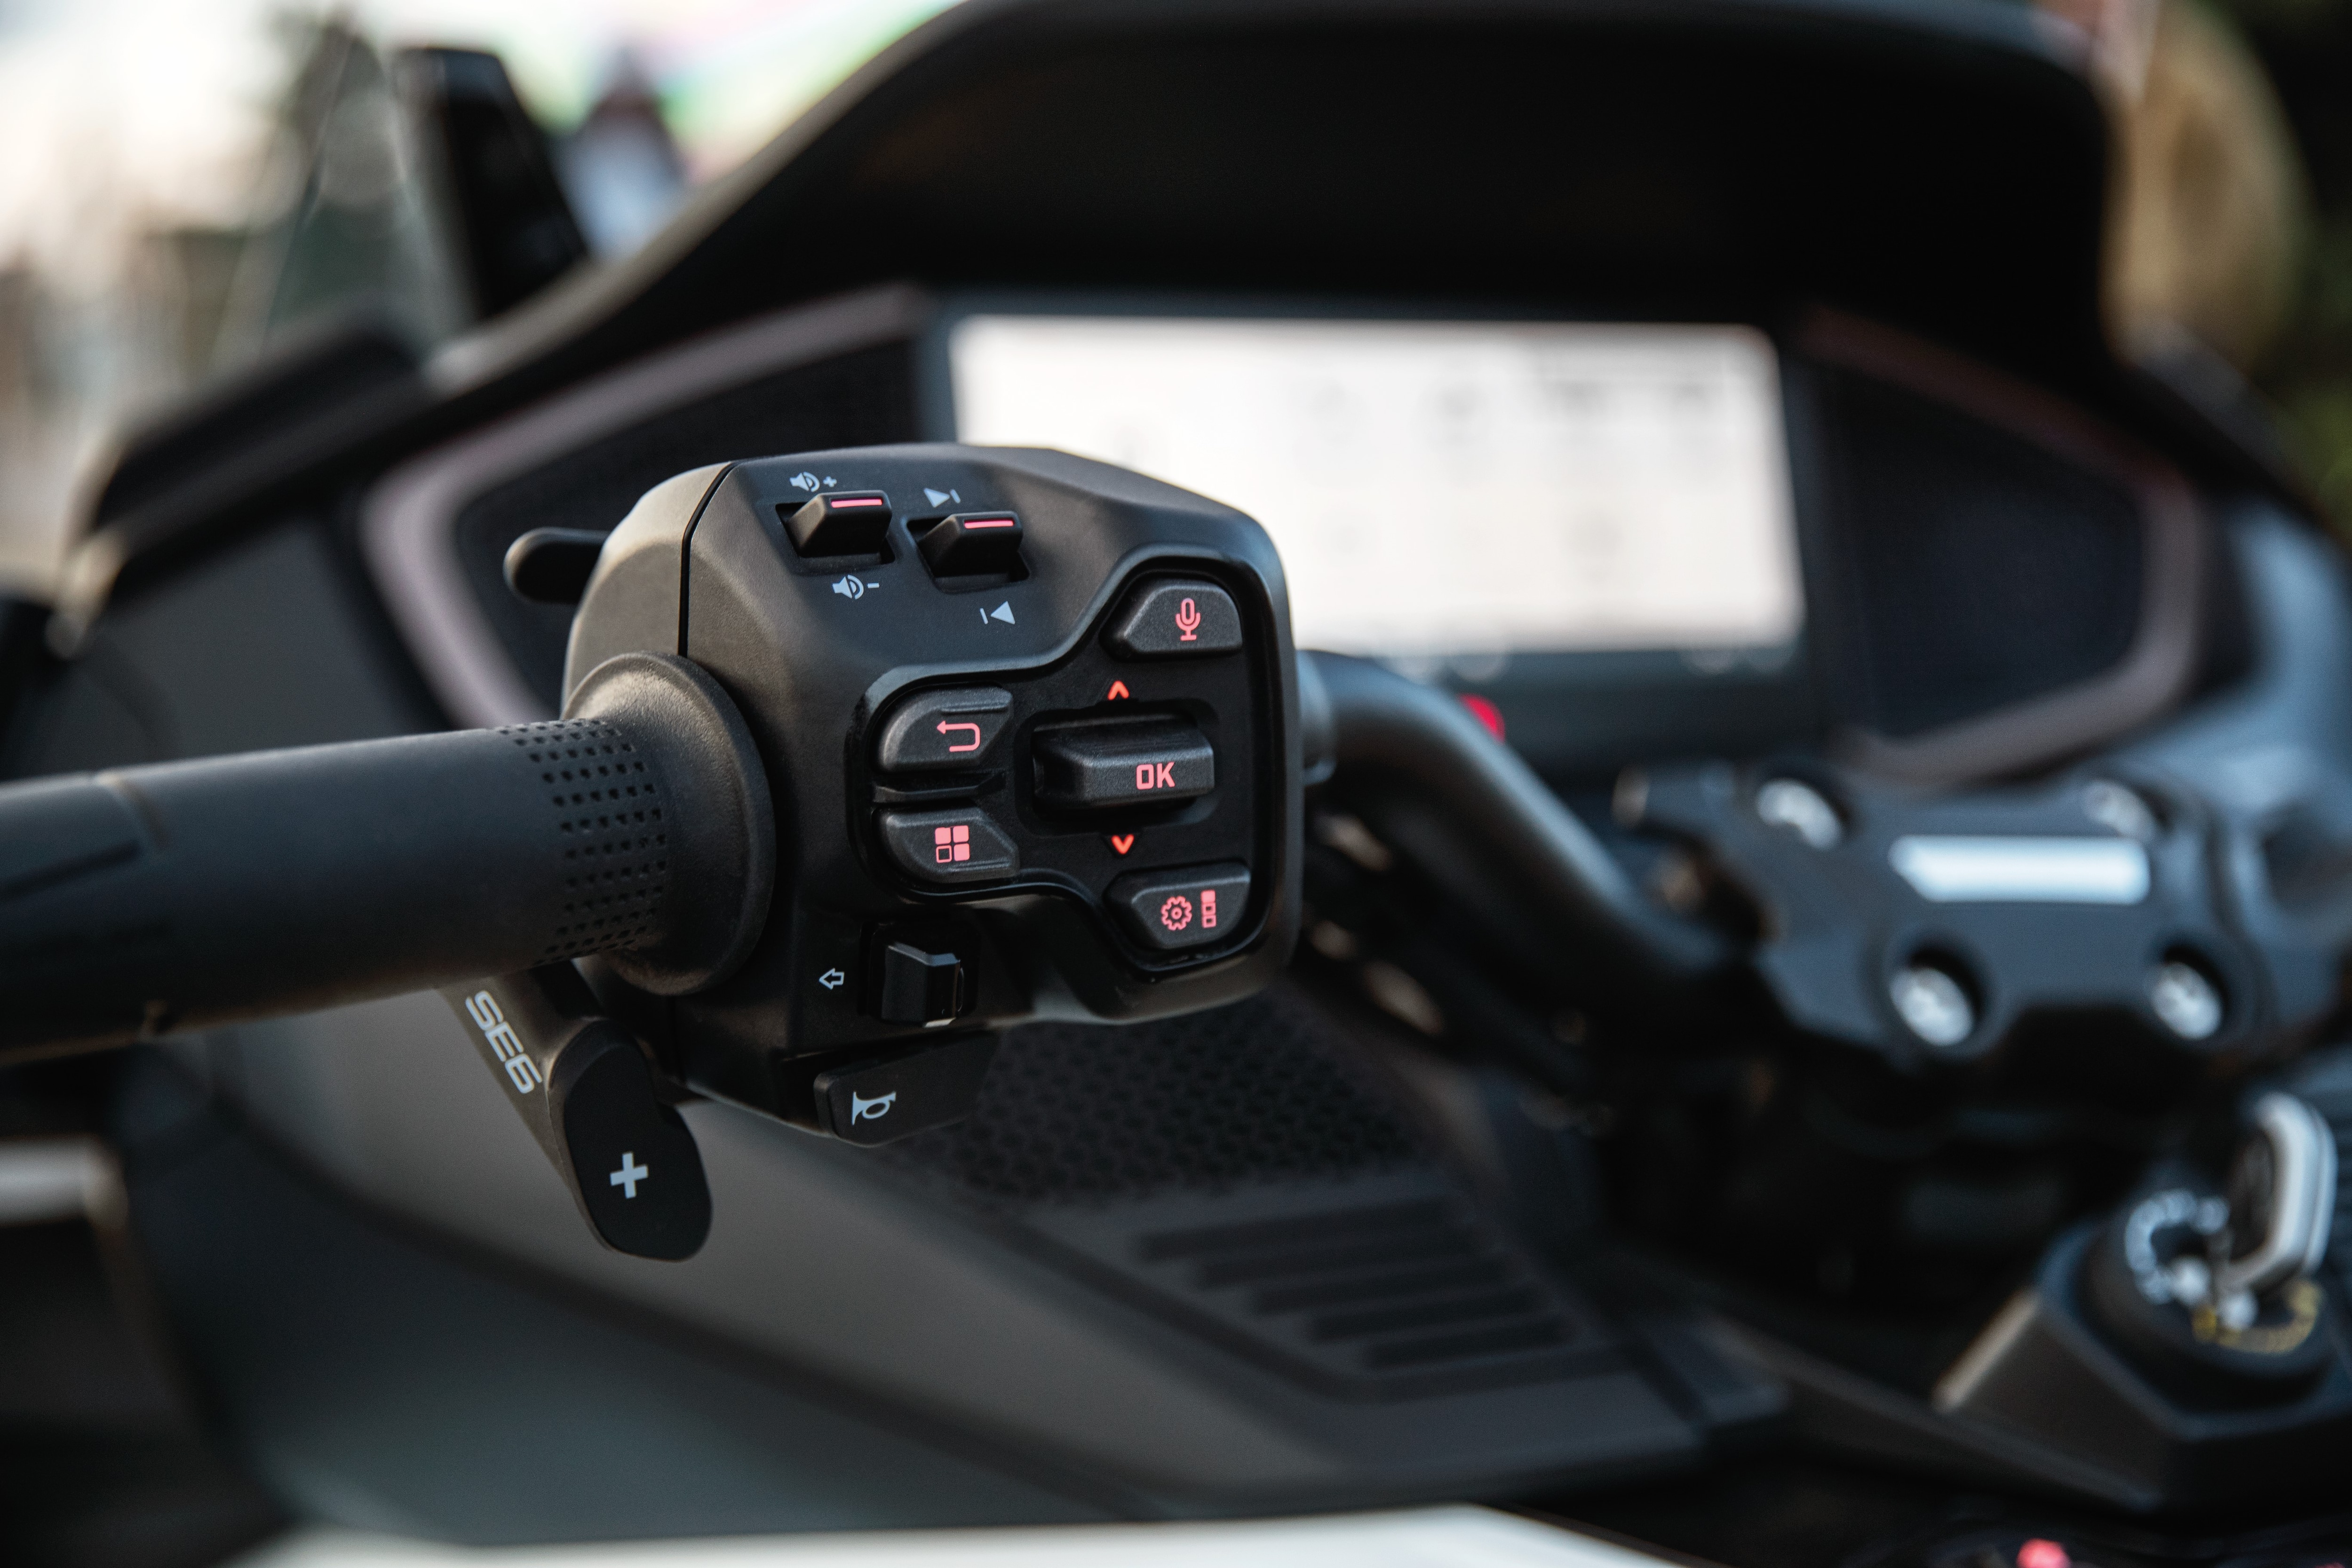 Consola de Can-Am Spyder, con asistente inteligente en modo ECO activado, vista desde el asiento del conductor.